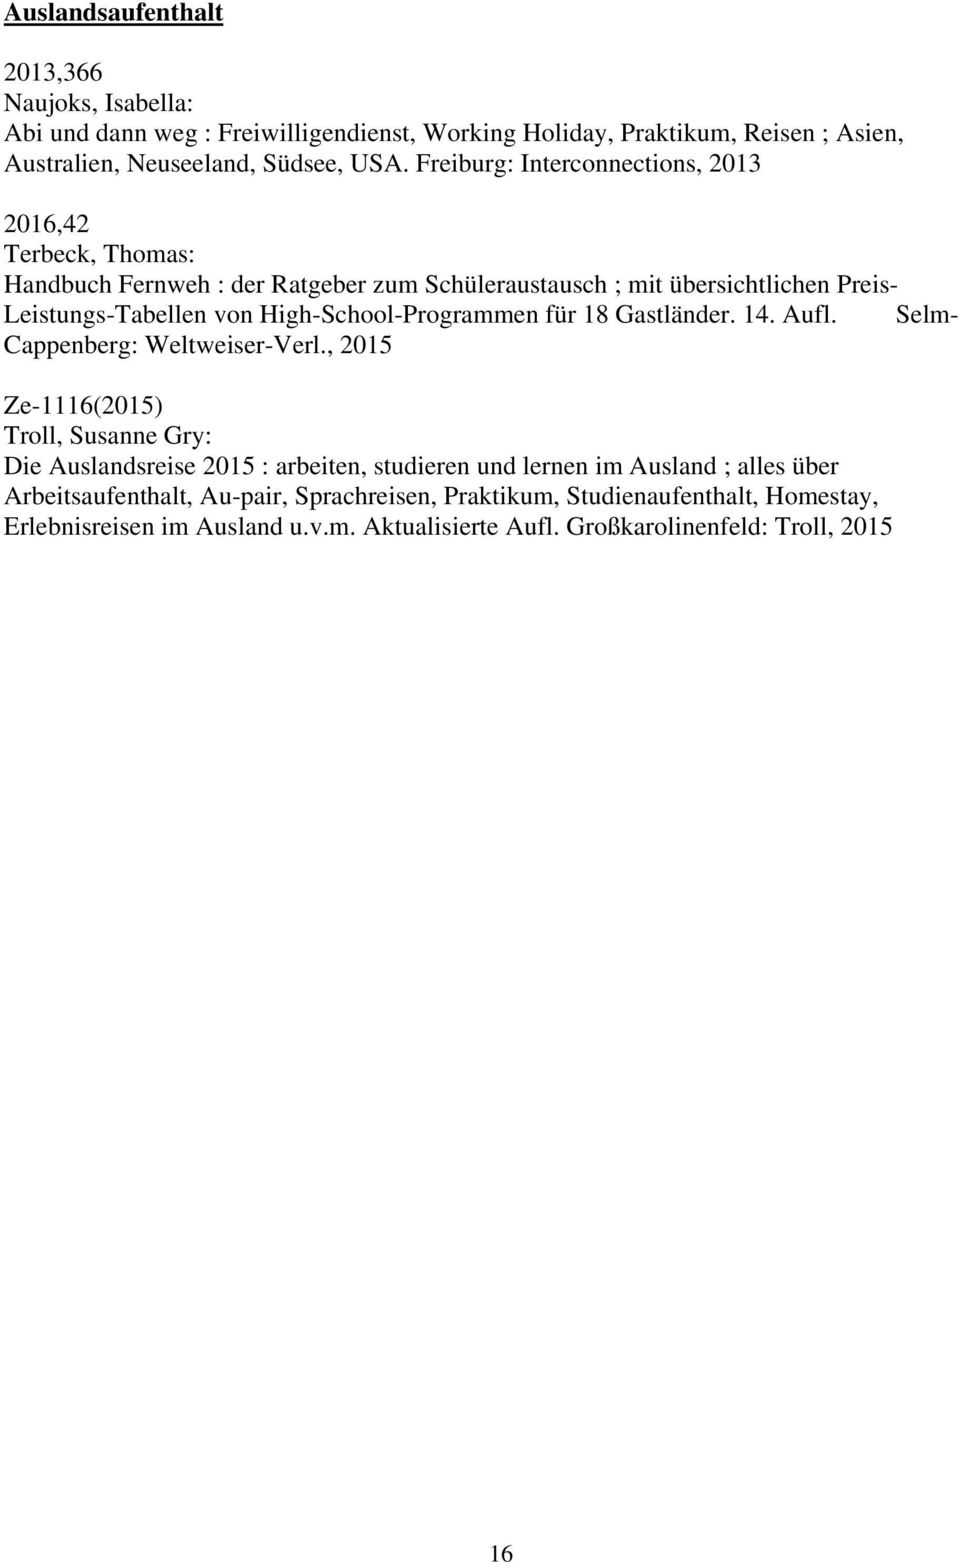 High-School-Programmen für 18 Gastländer. 14. Aufl. Selm- Cappenberg: Weltweiser-Verl.